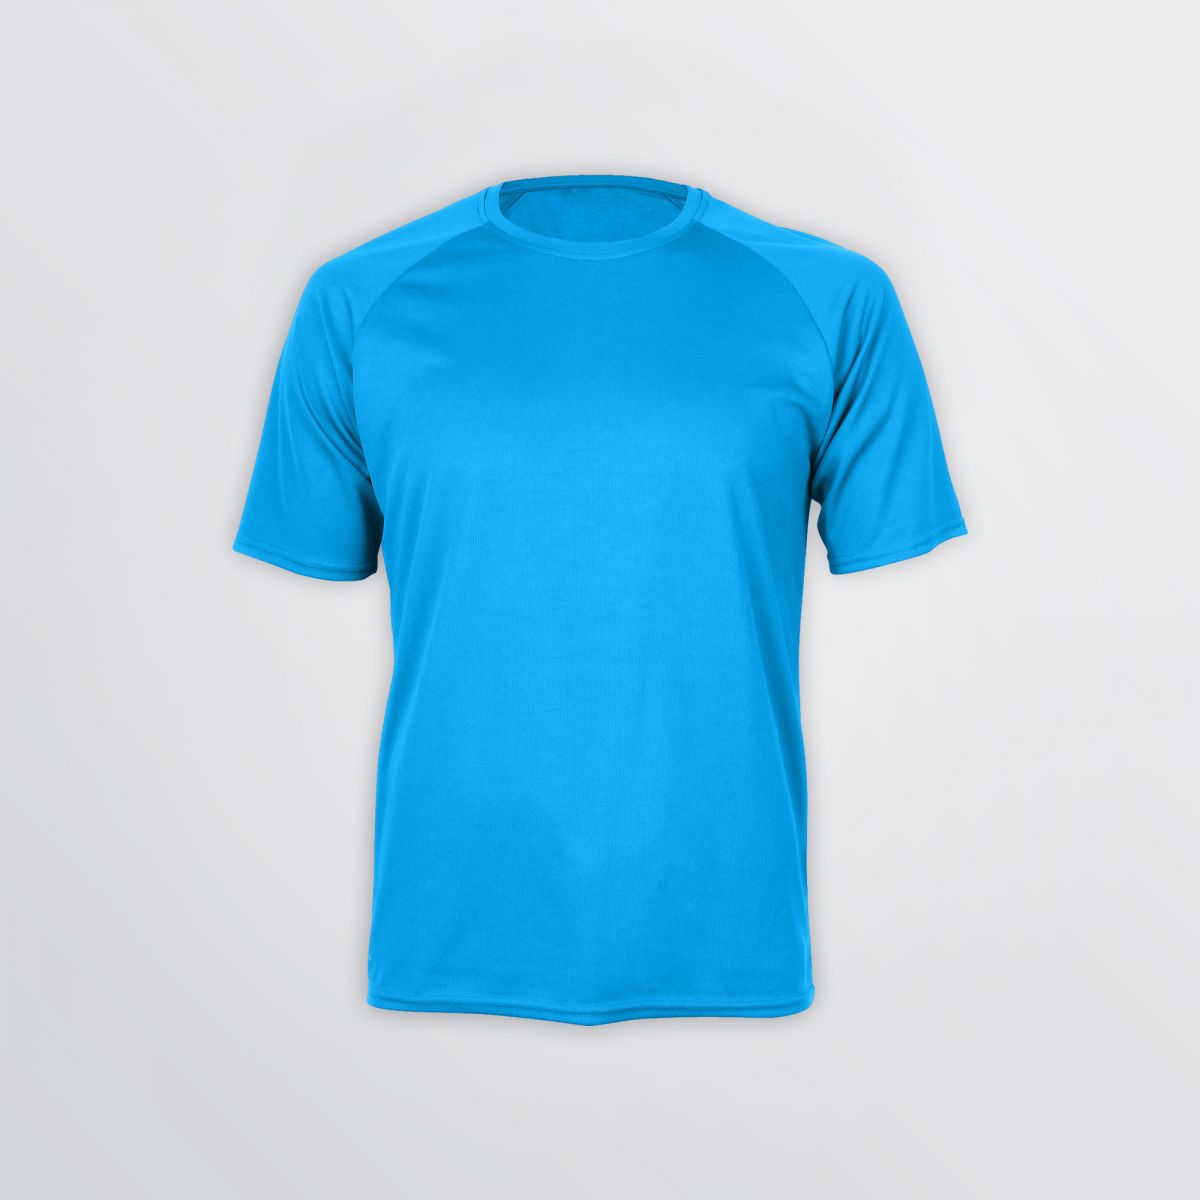 Basic Tech Shirt aus Funktionsmaterial zum Individualisieren als Produktbeispiel in blauer Farbe Herrenschnitt - Frontansicht